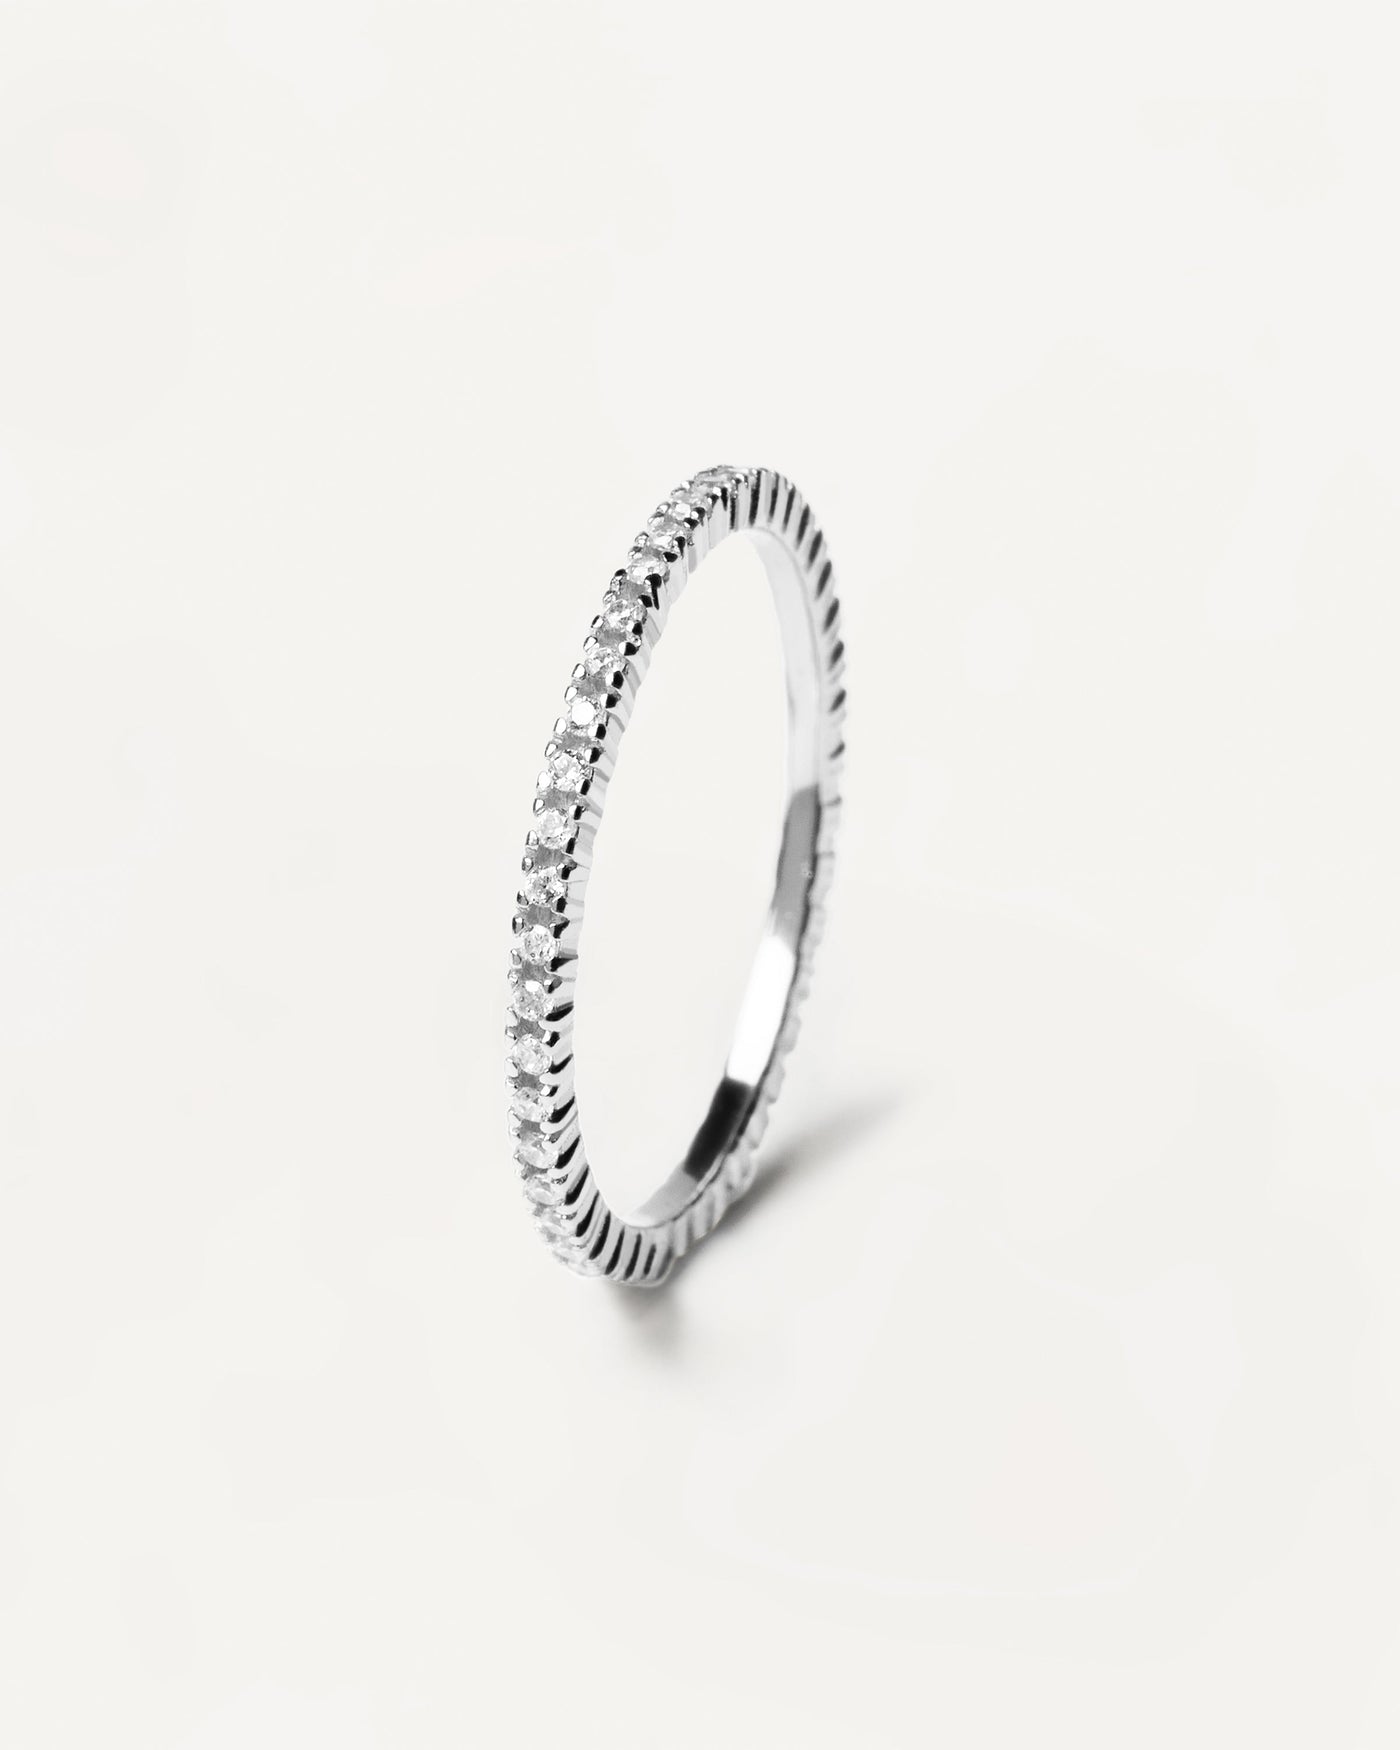 Anillo White Essential Silver. anillo de plata de ley 925 completamente engarzado con circonita blanca. Consigue las últimas novedades de PDPAOLA. Haz tu pedido de forma segura y obtén este Best Seller.